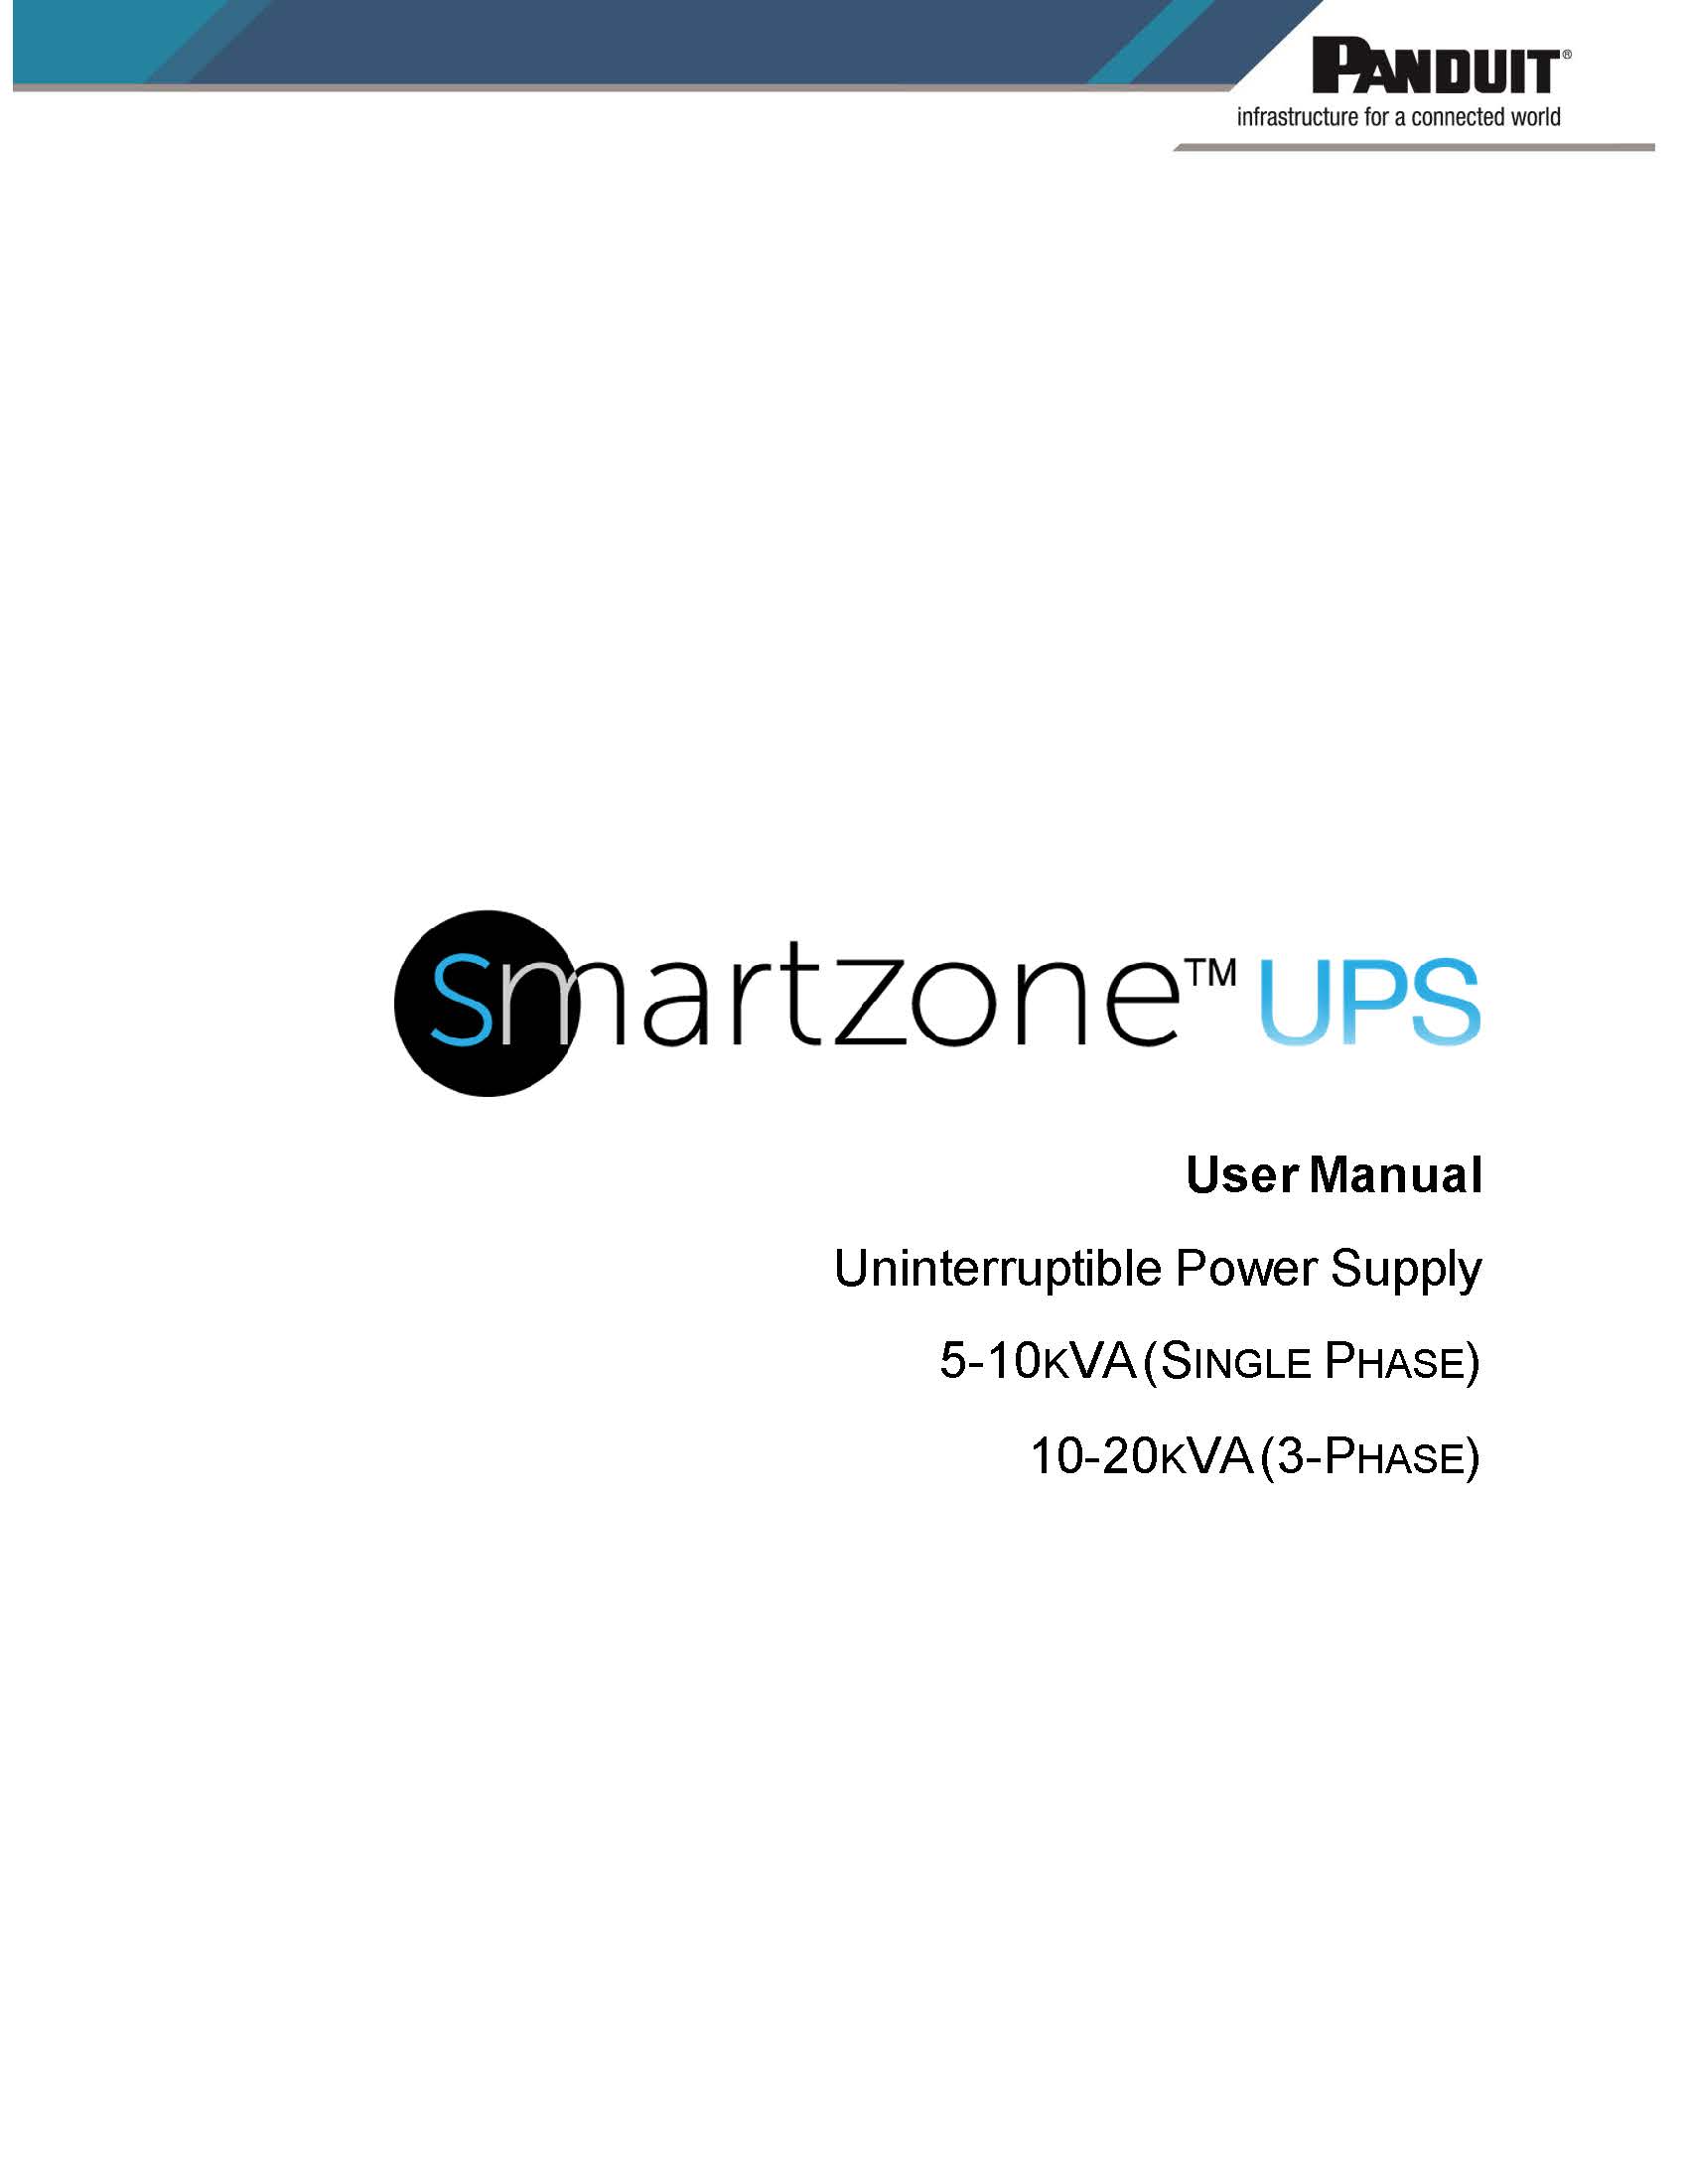 SZ UPS 5-20 kVA User Manual.jpg